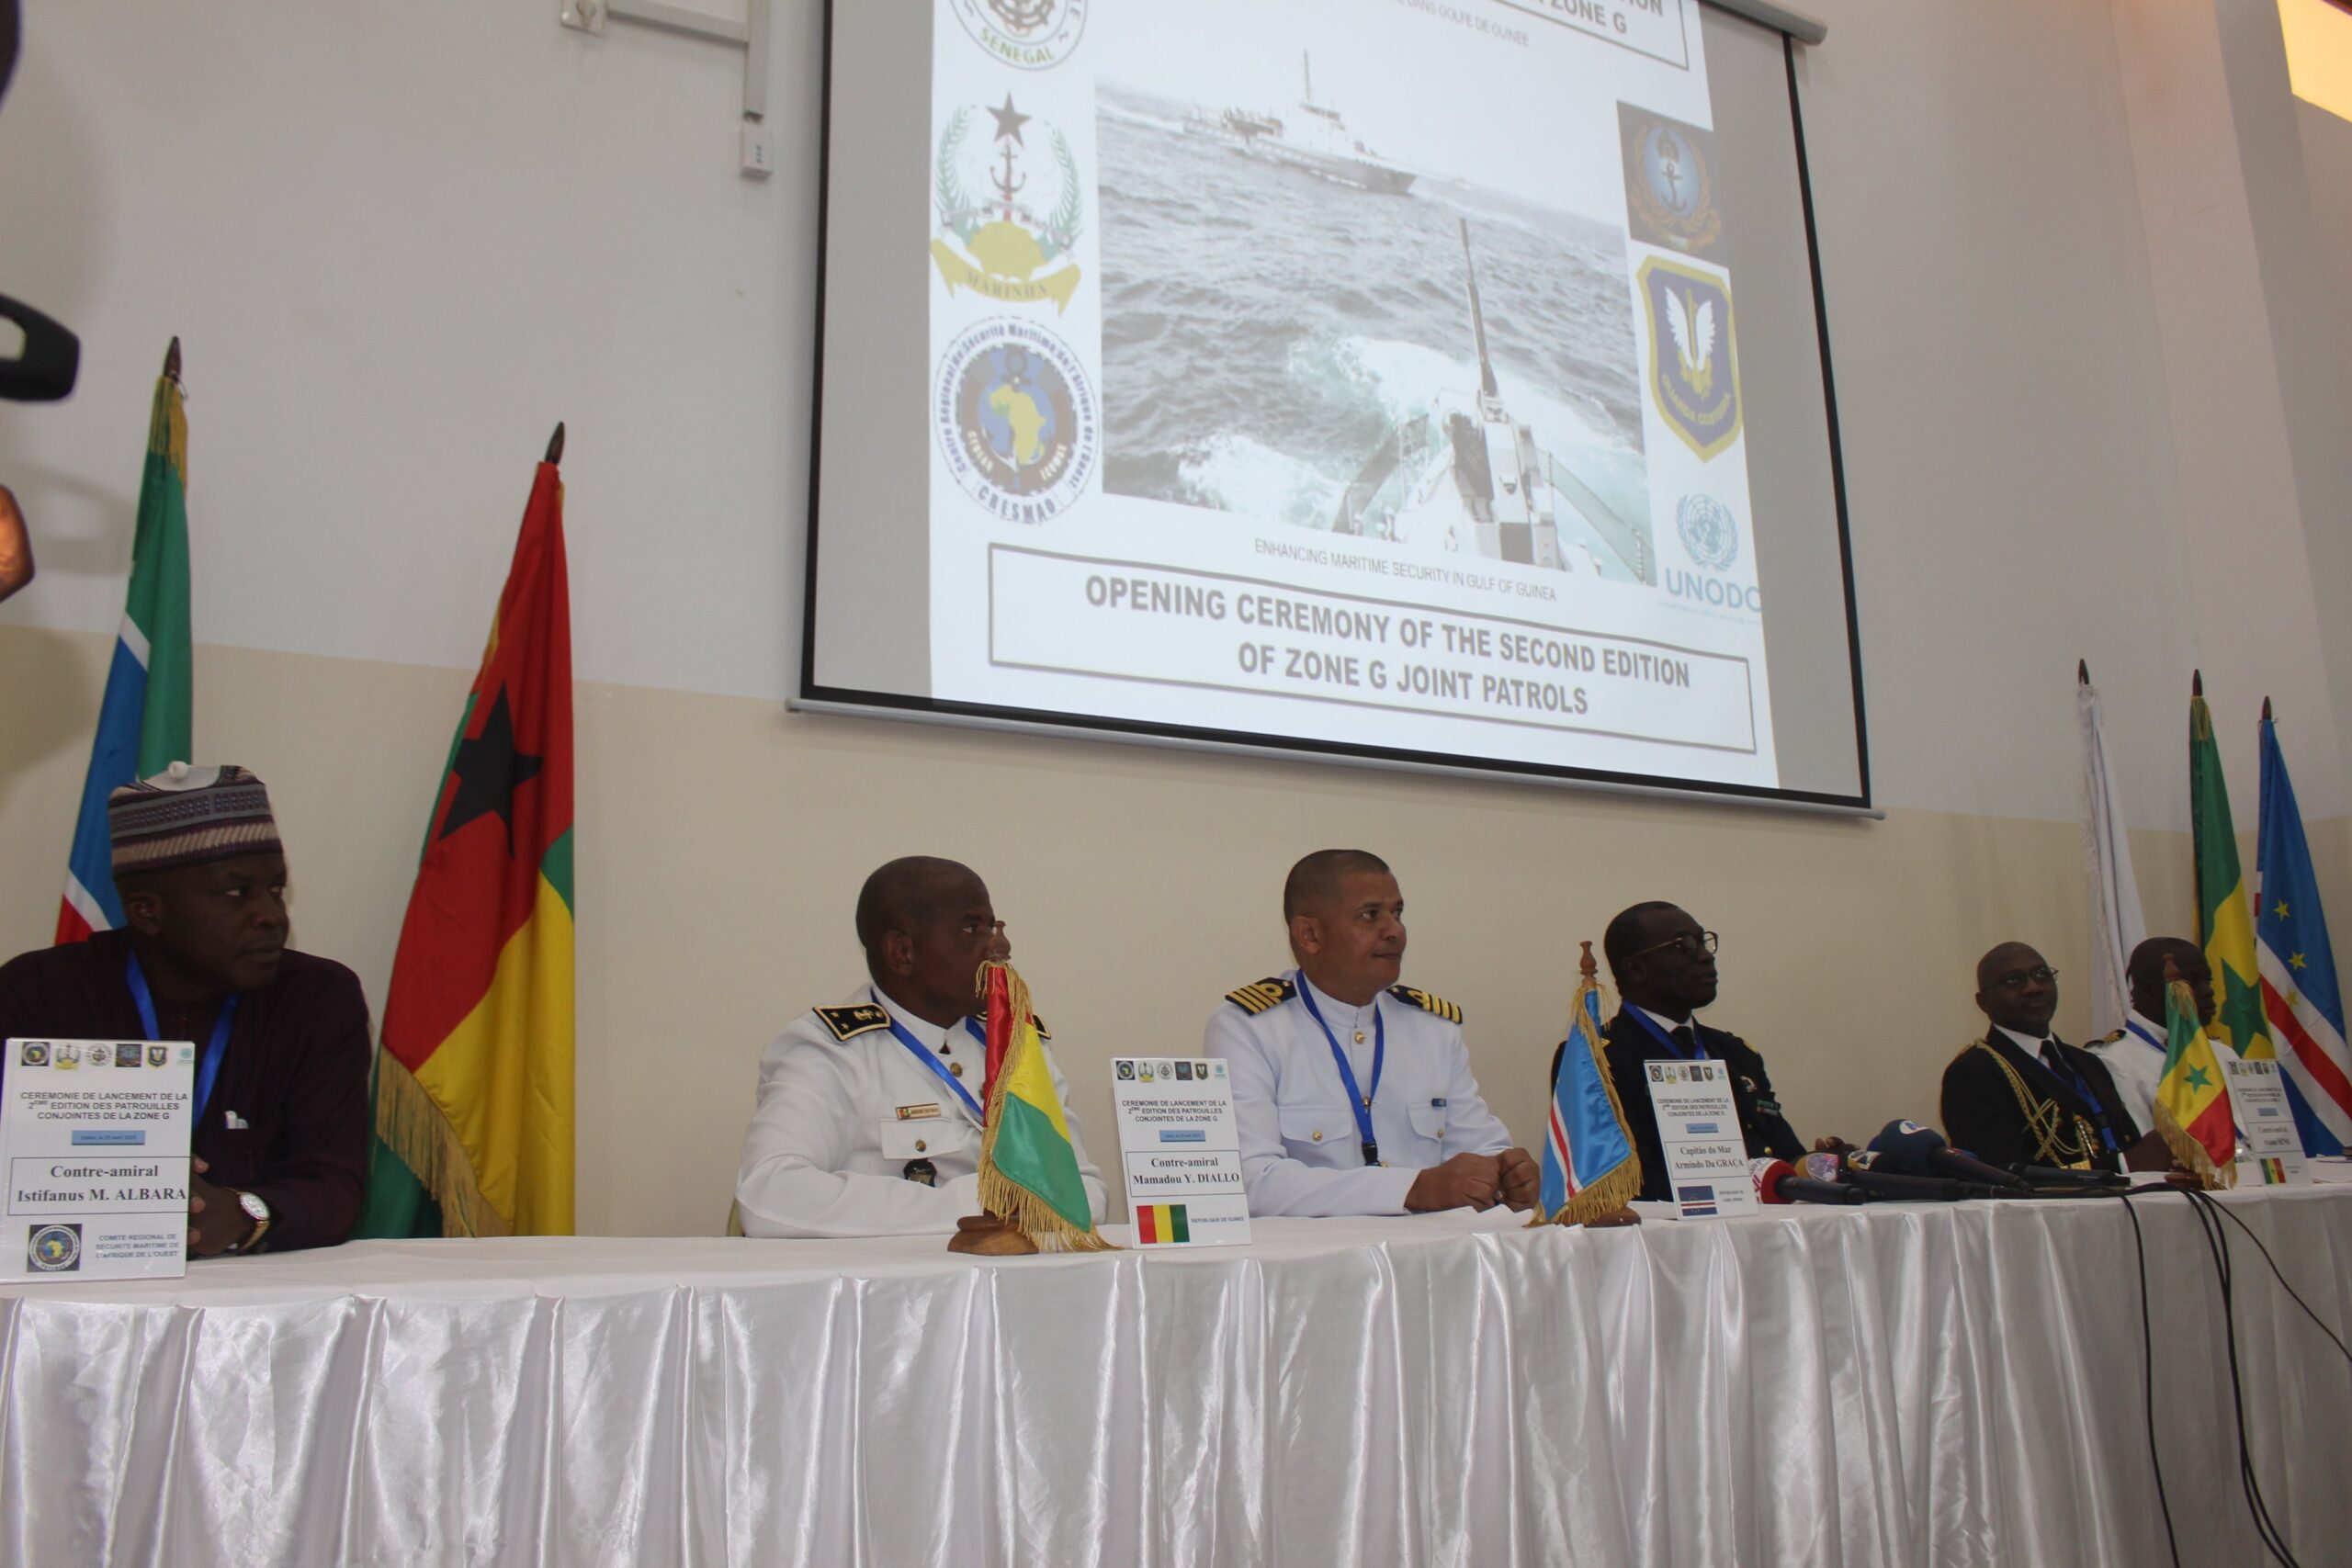 Sécurité maritime : Lancement effective de la deuxième édition des activités opérationnelles conjointes de la Zone G